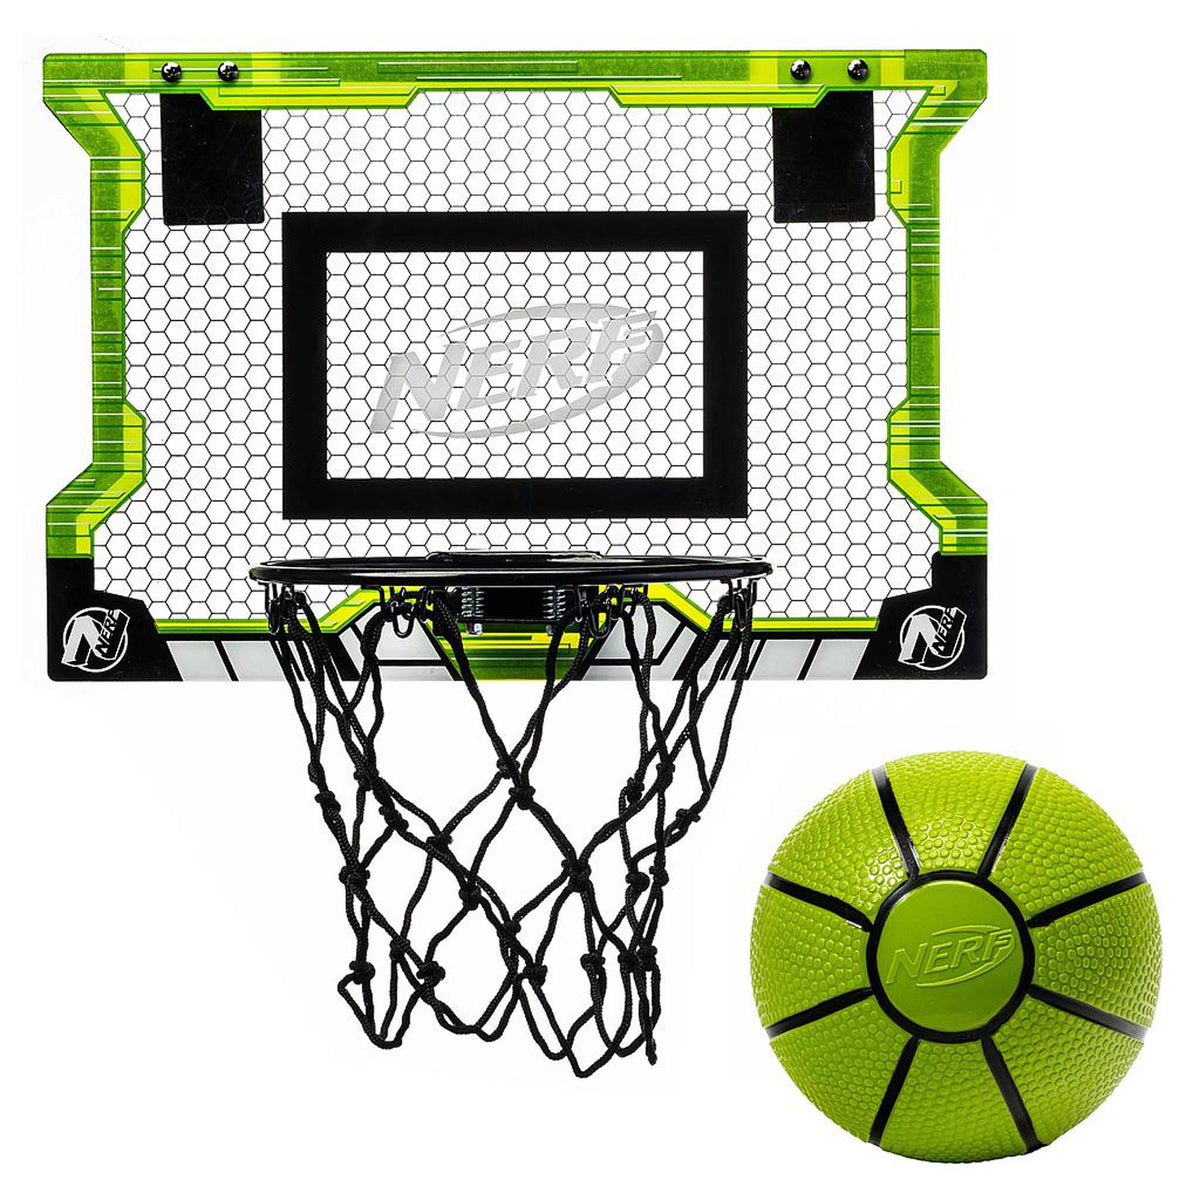 Nerf Pro Basketball Hoop